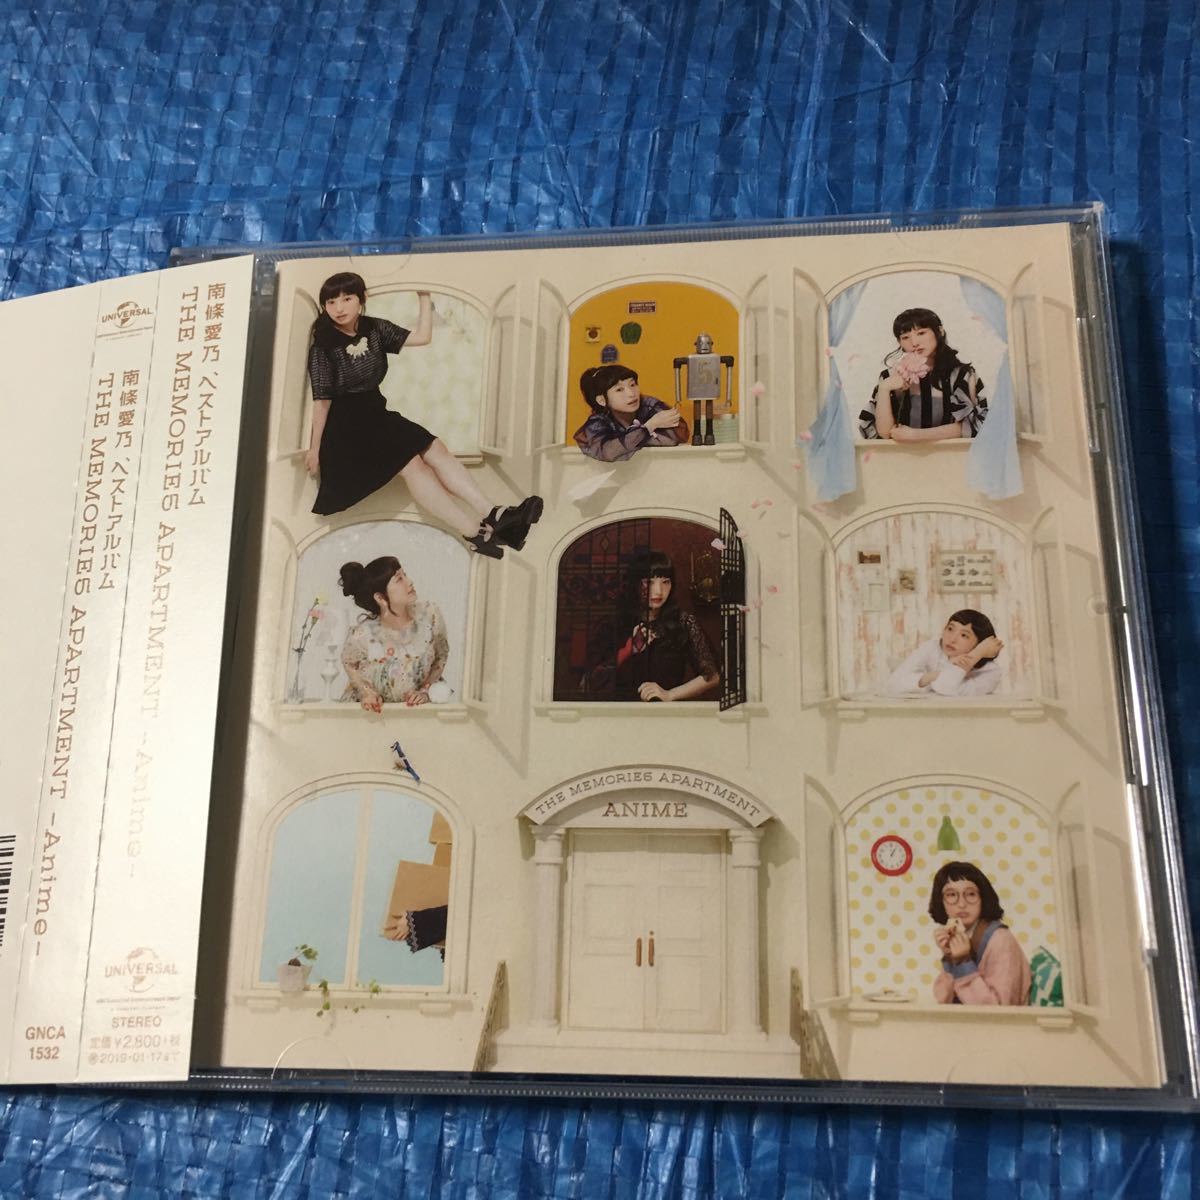 ベストアルバム THE MEMORIES APARTMENT ‐ Anime ‐ (通常盤) CD 南條愛乃